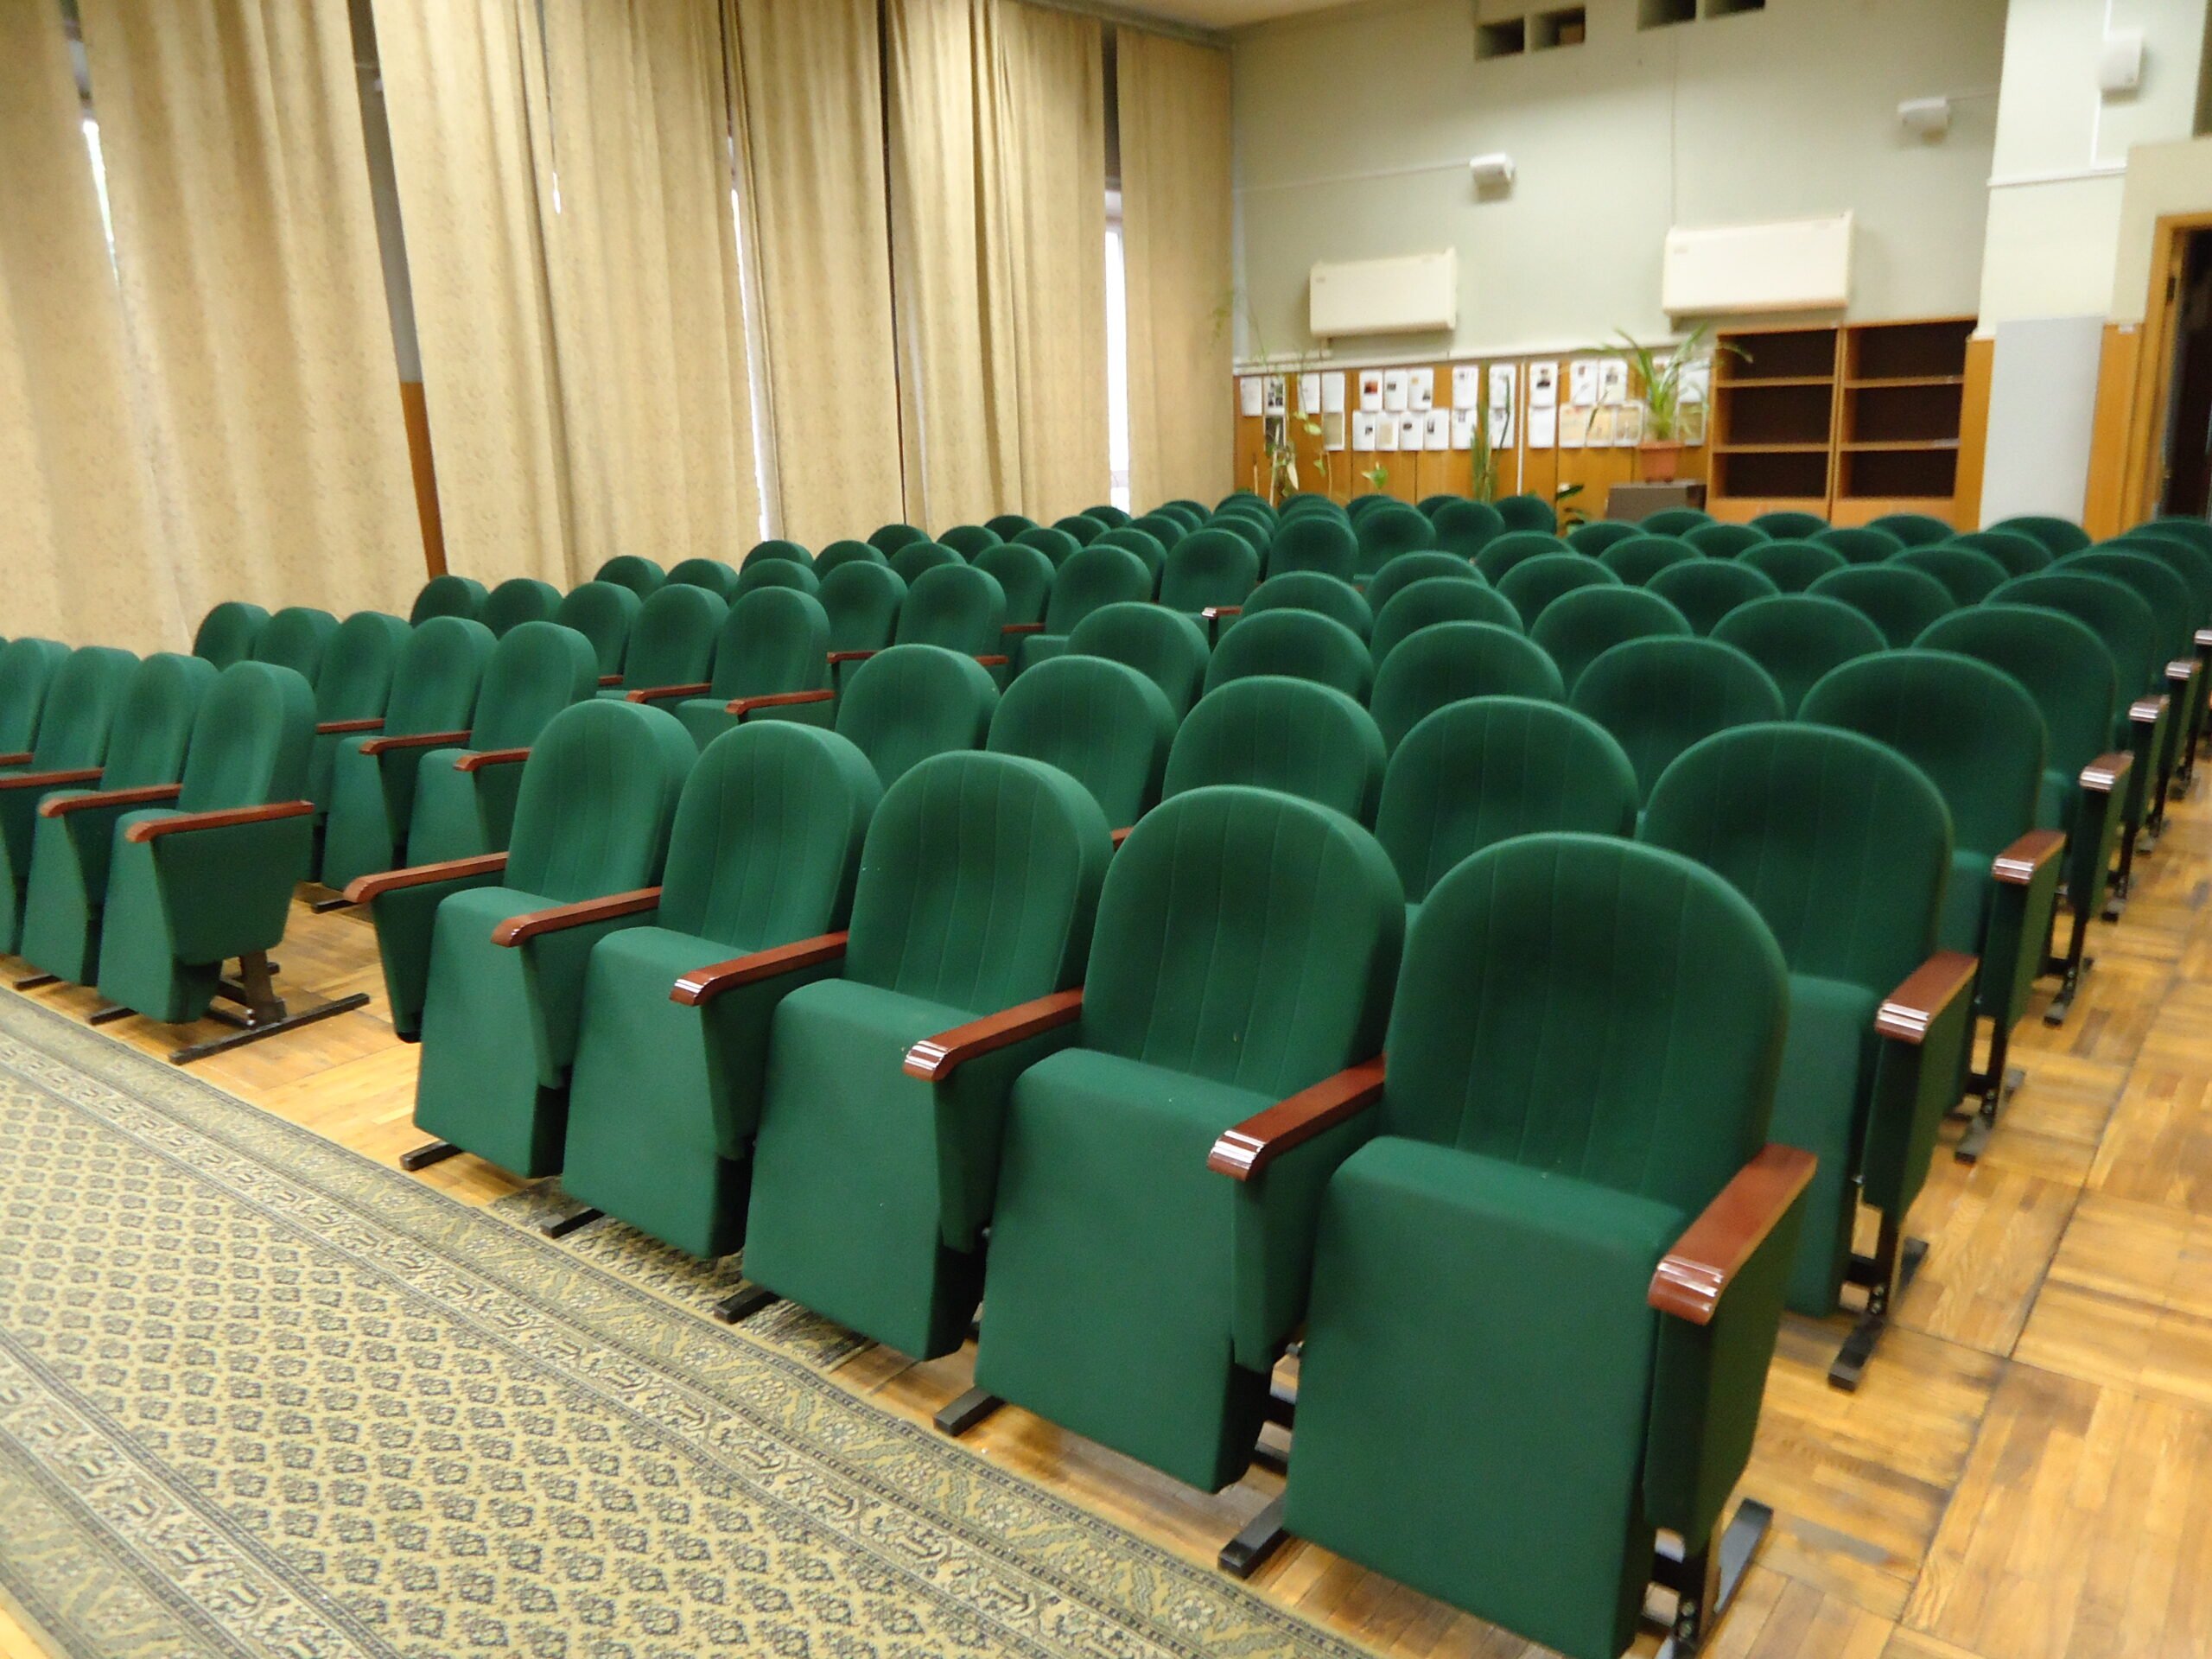 Актовый зал в театре. Секция для актового зала Вега 1736х575х870мм. Talin кресла актового зала.